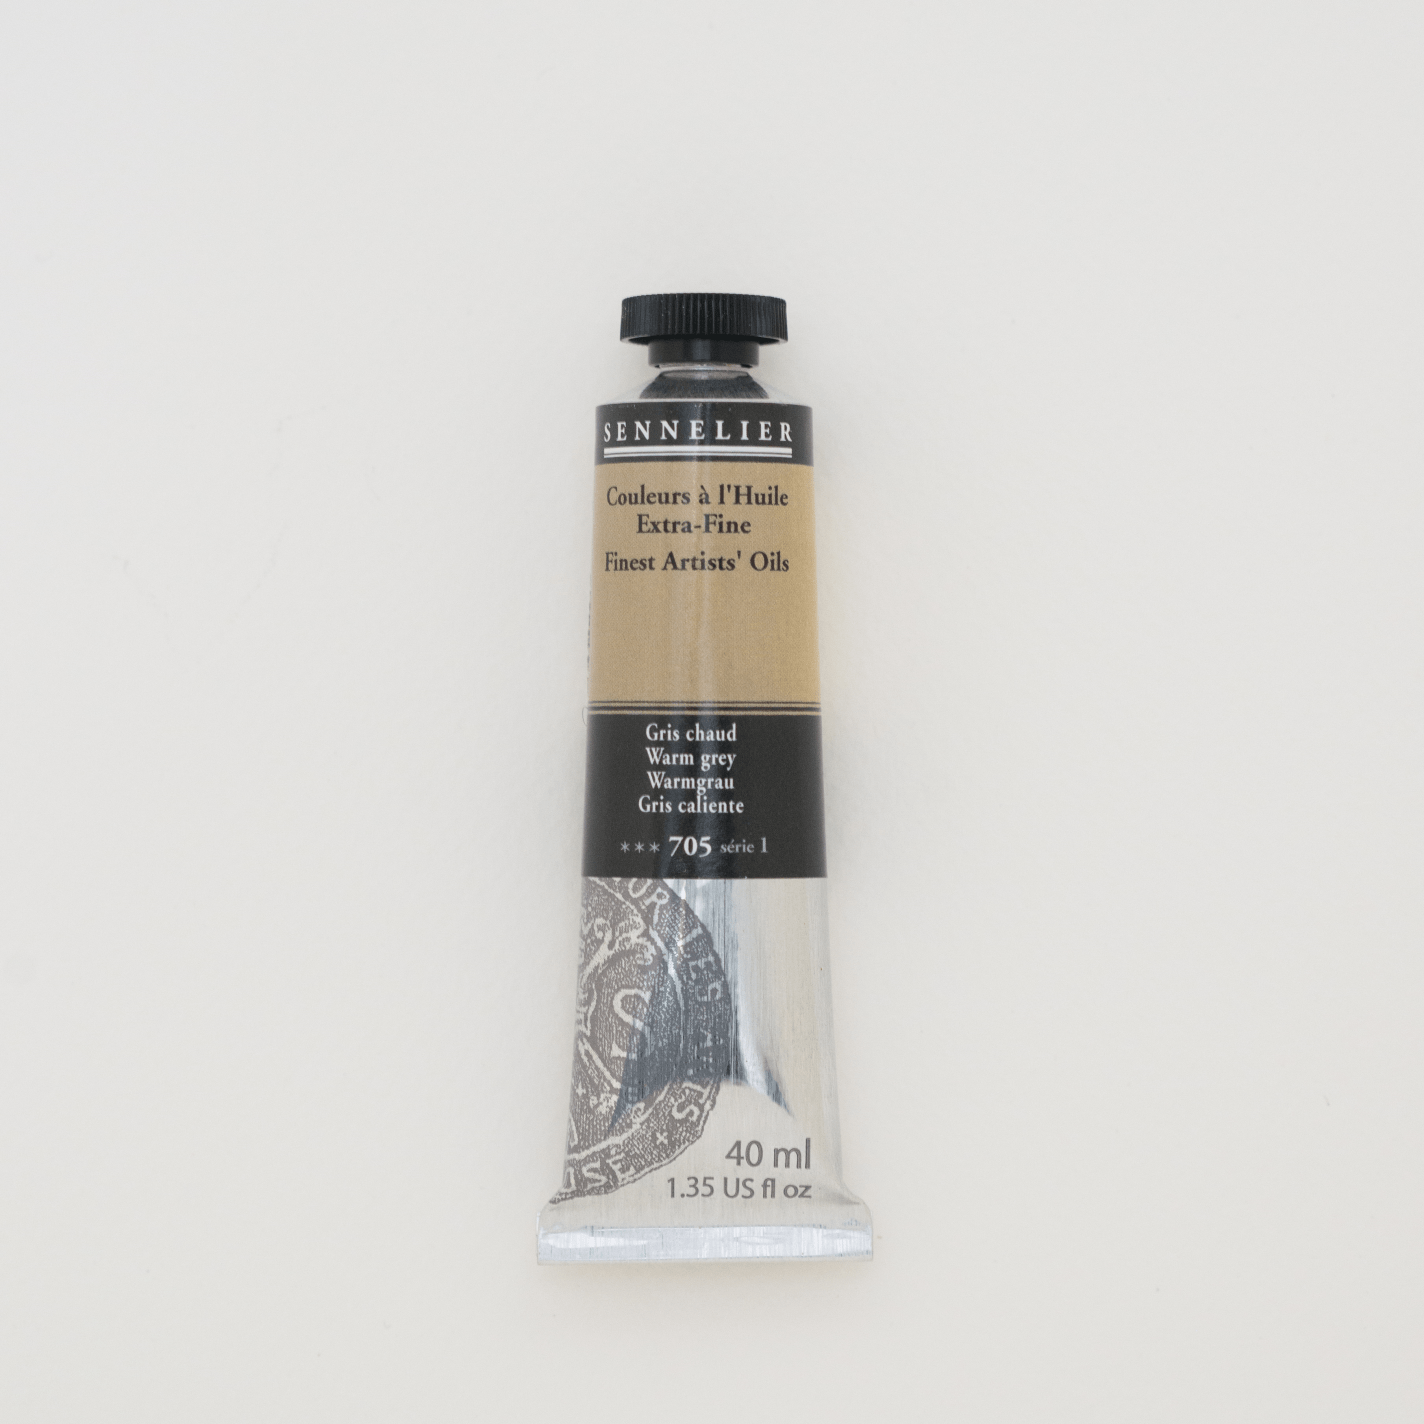 Sennelier Oliemaling 40ml Warm Grey